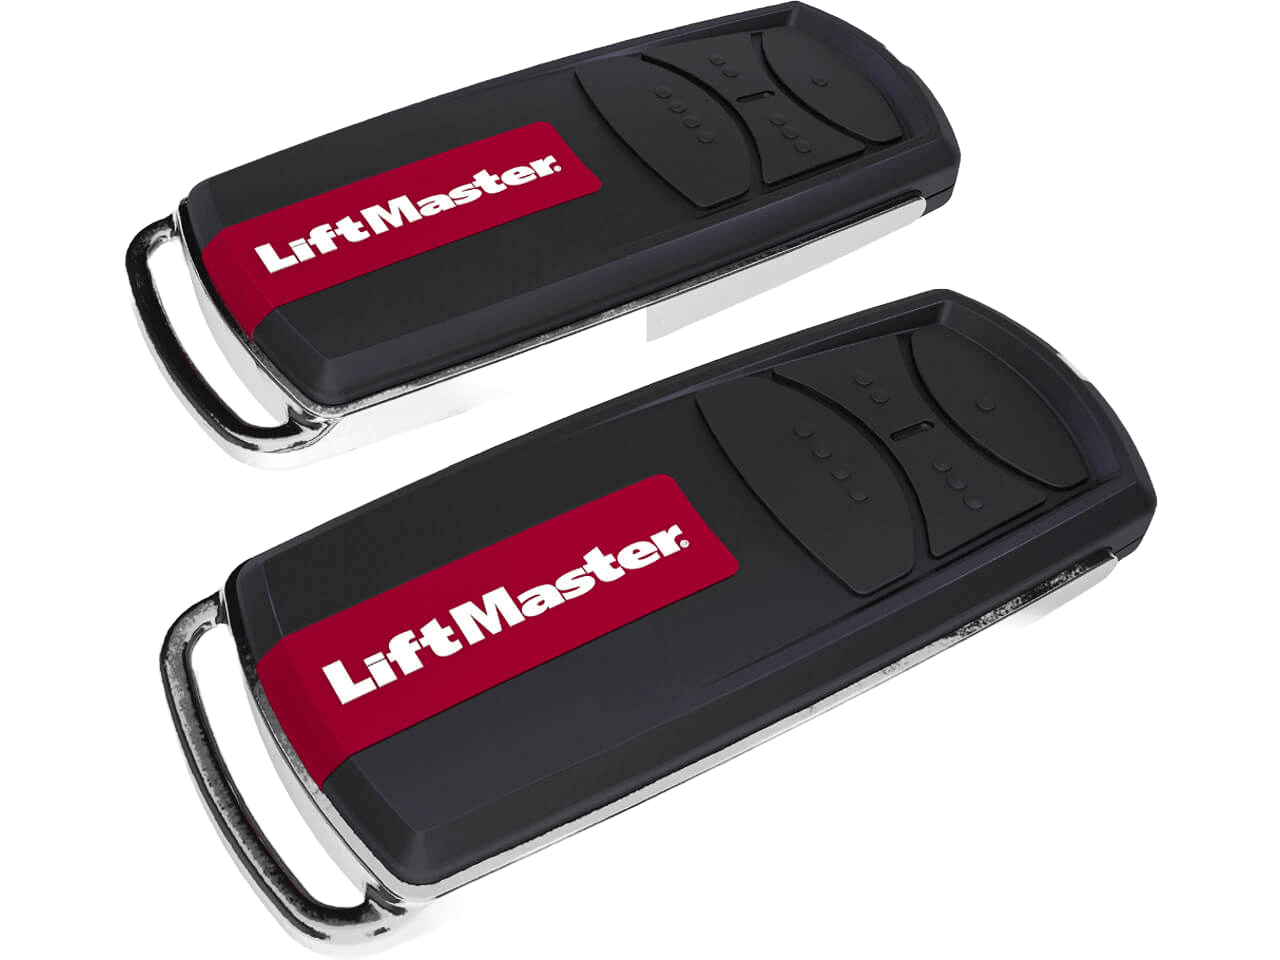 LiftMaster LM60EVF Residential Garage Door Opener 600N up to 100 kg Door Weight